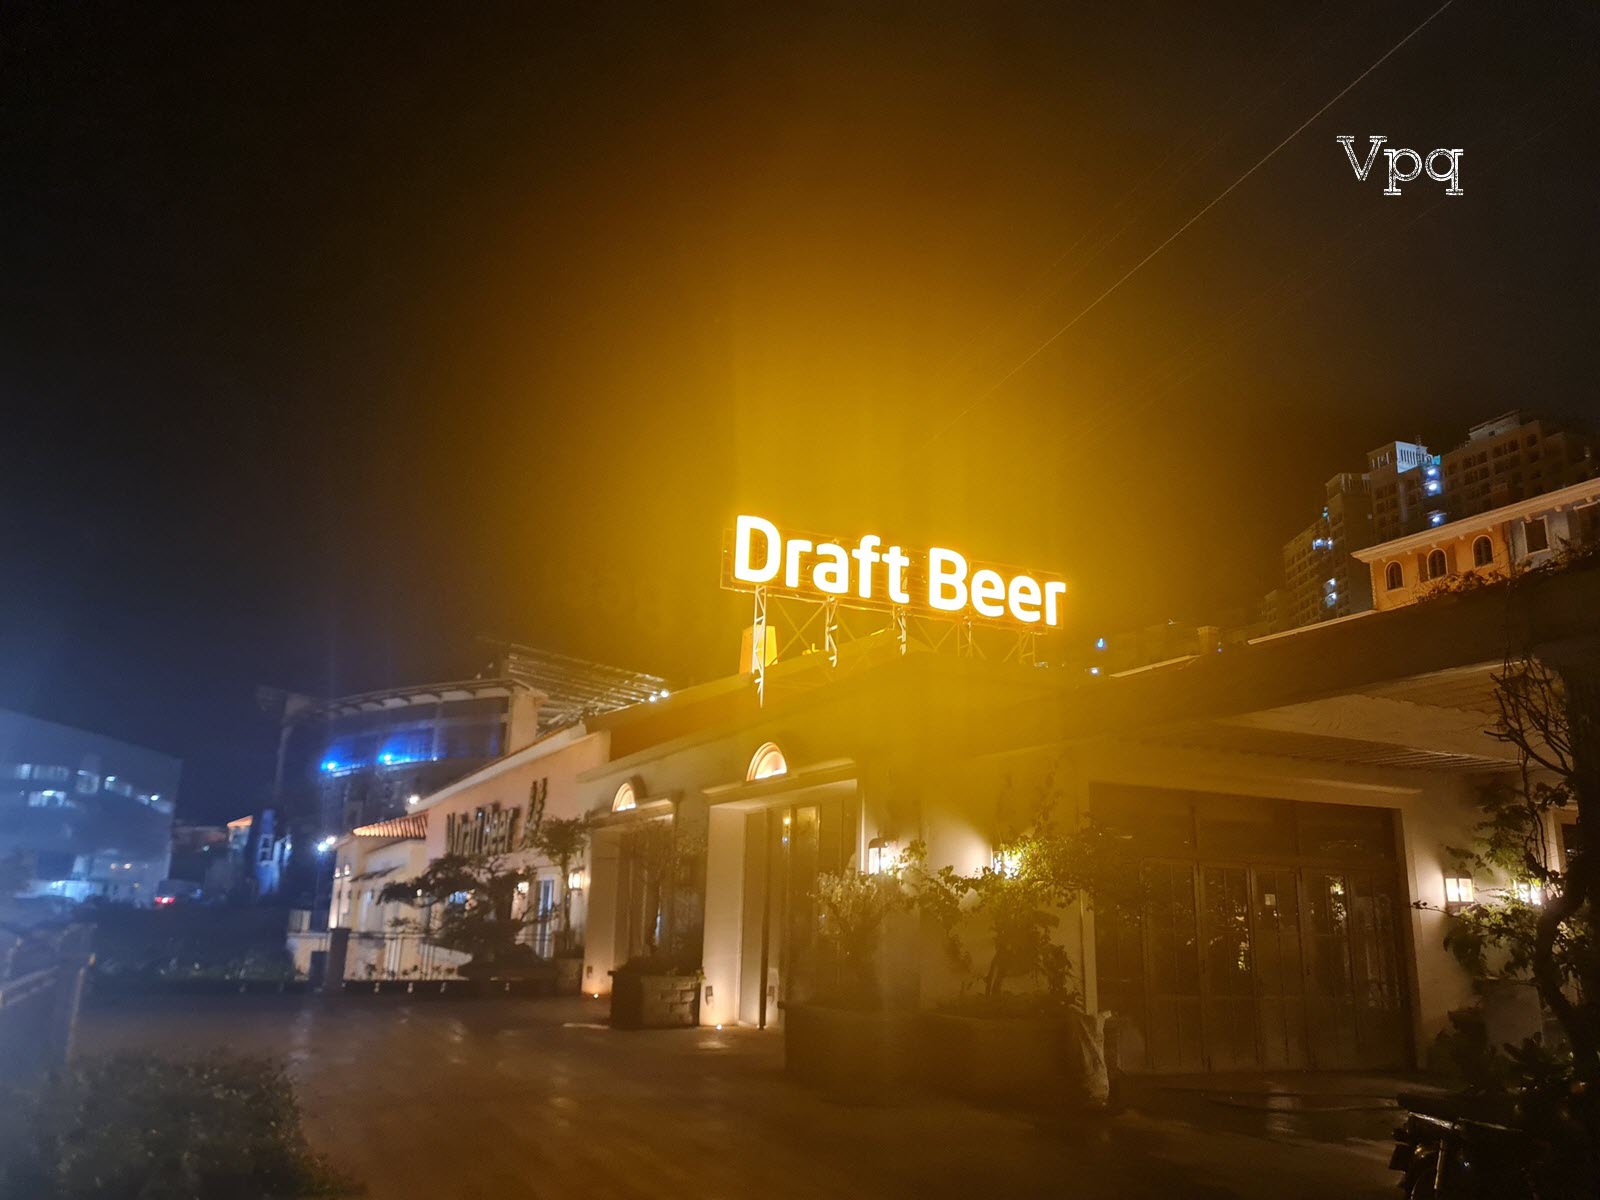 Draft Beer Địa Trung Hải Phú Quốc đã lên đèn đón khách